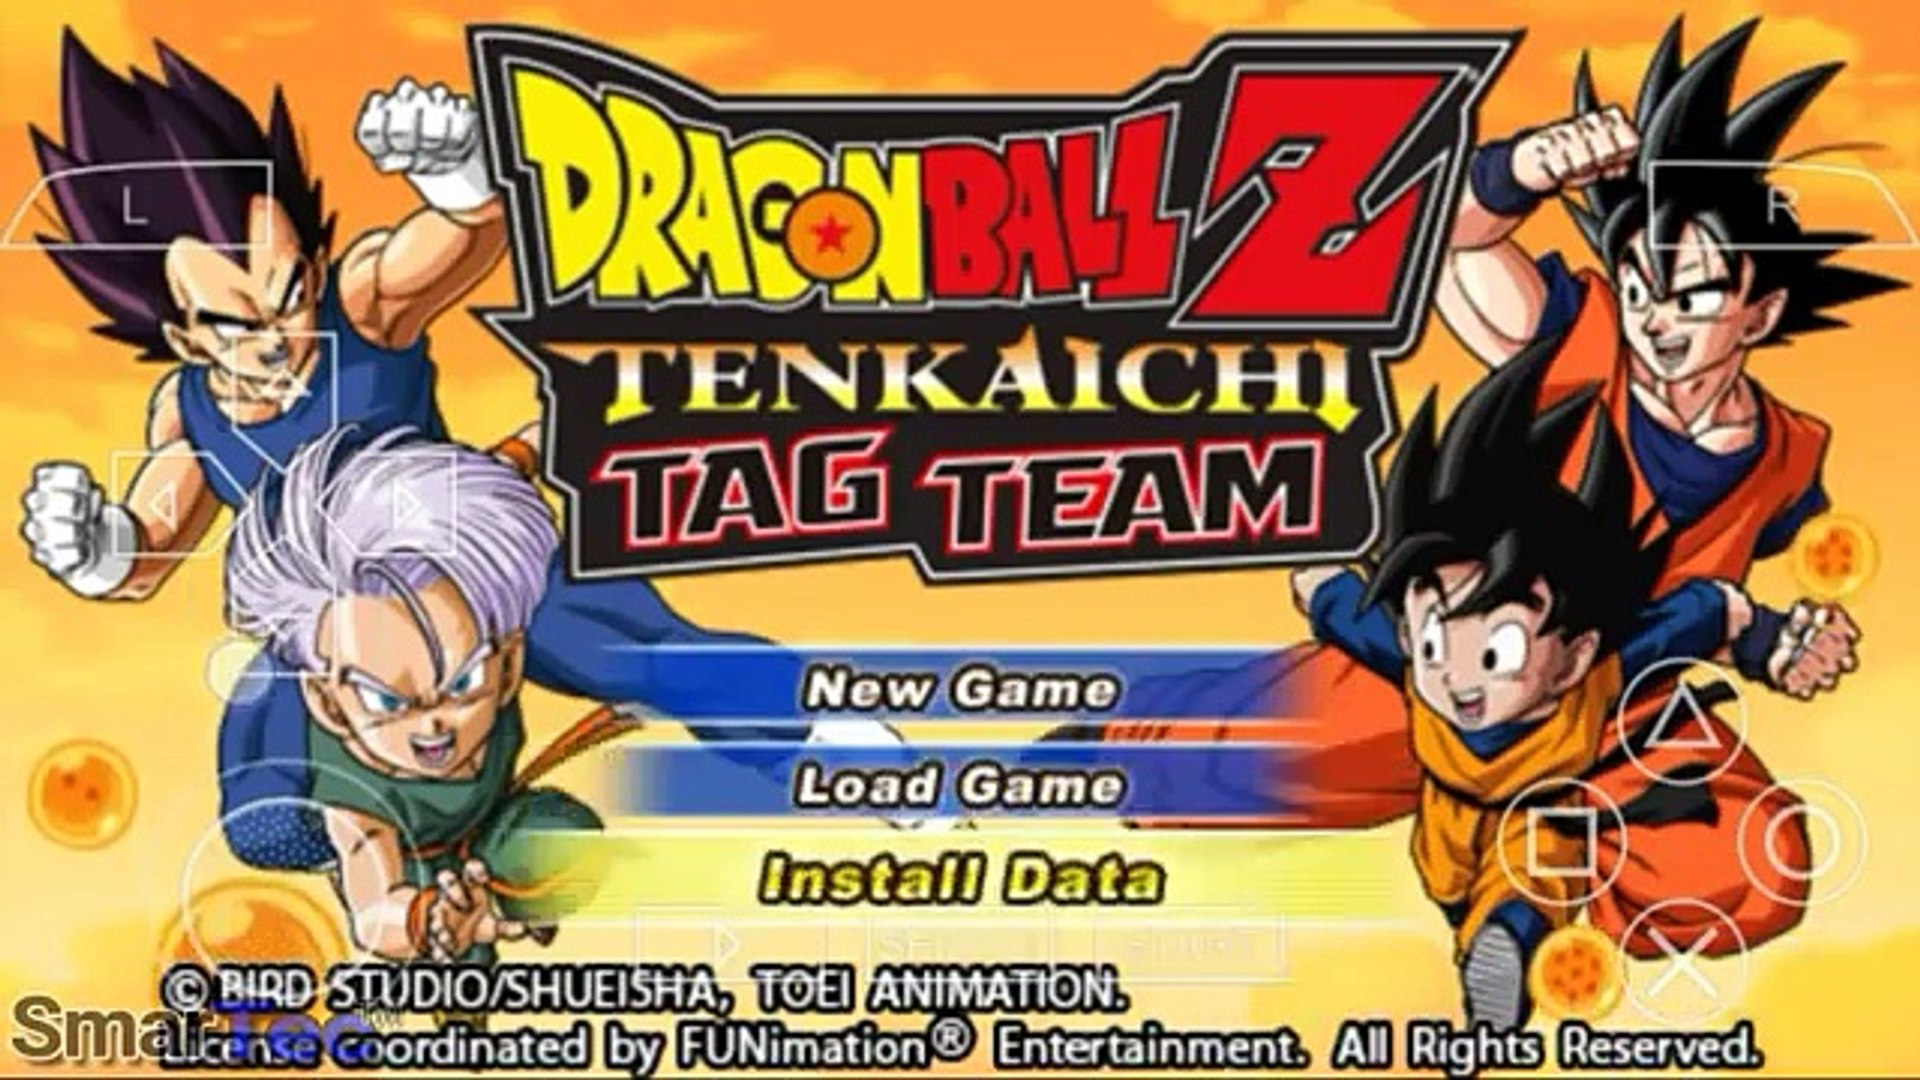 Dragon Ball Z Super Budokai Tenkaichi 3 v2.0 APK + OBB (No Emulator) For  Android 